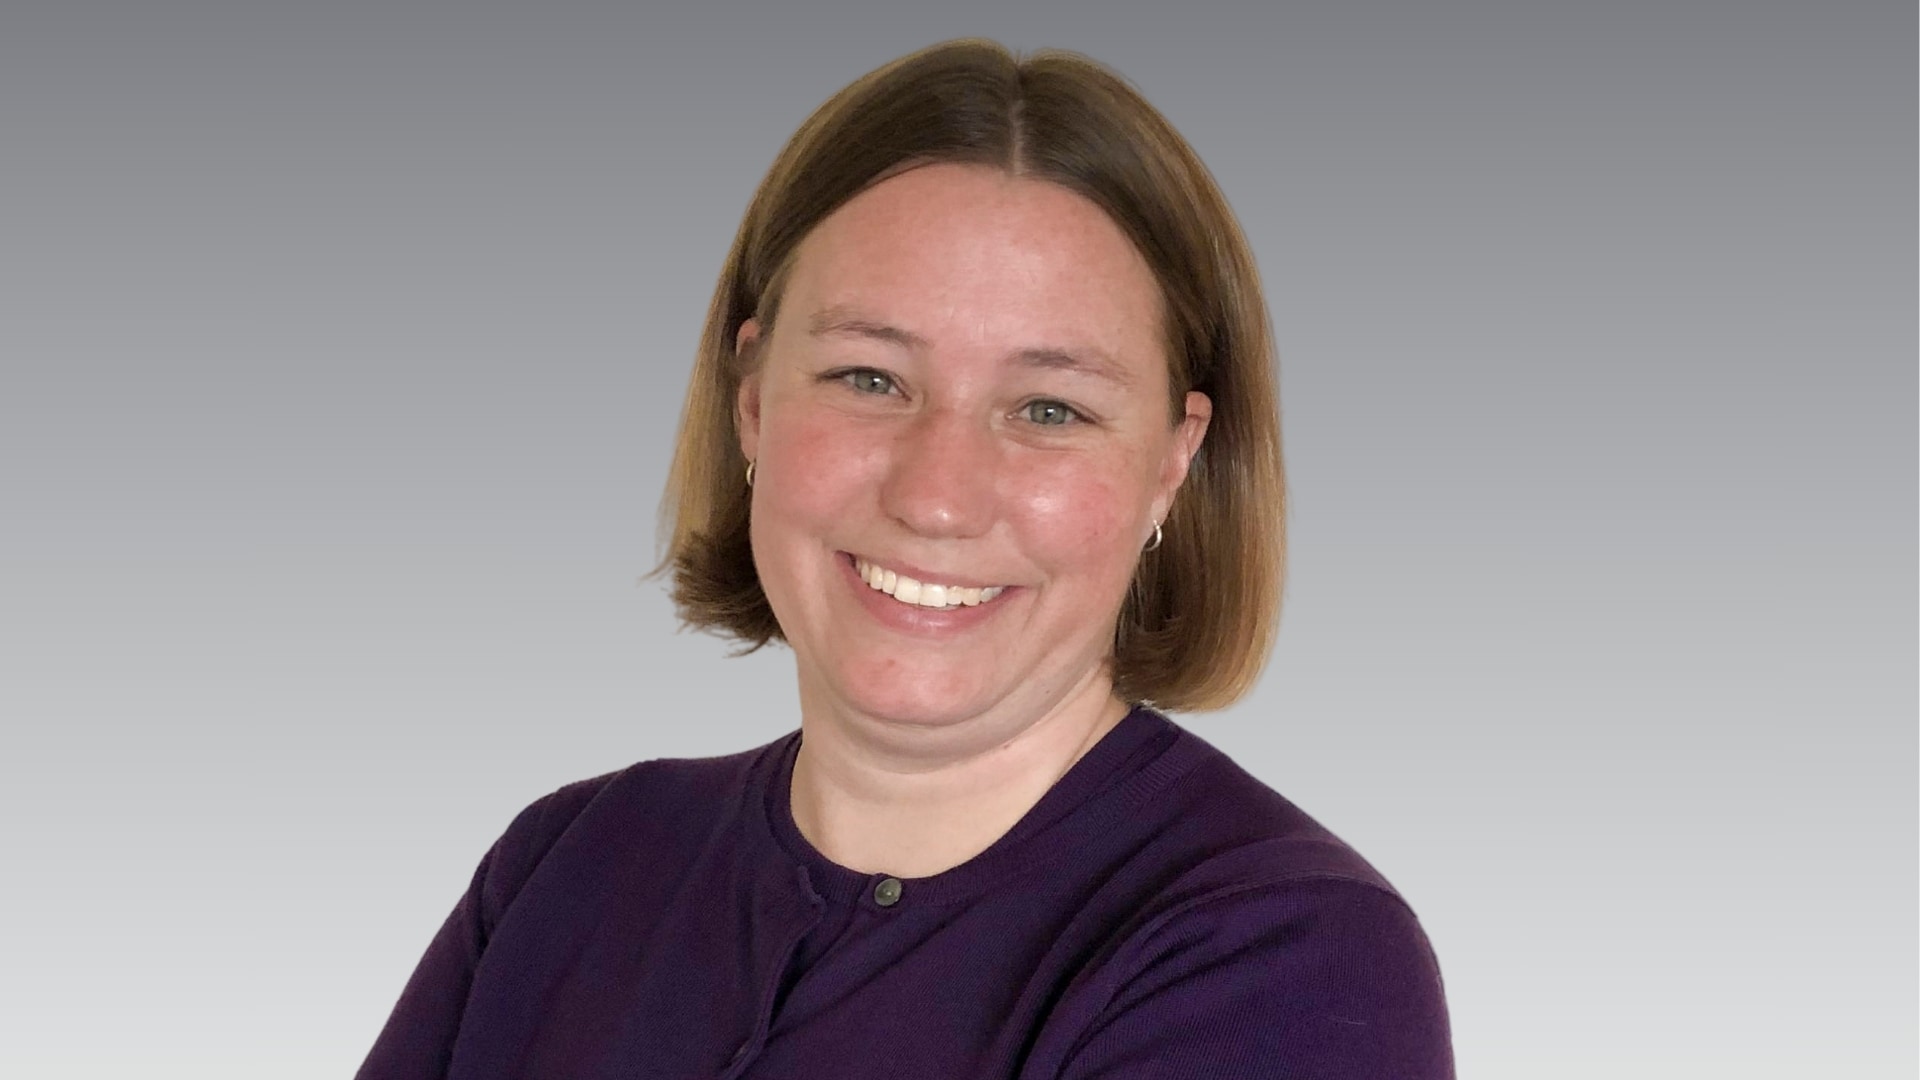 Jessica Ellison, Regional Director, Southwest, specializing in ergonomics